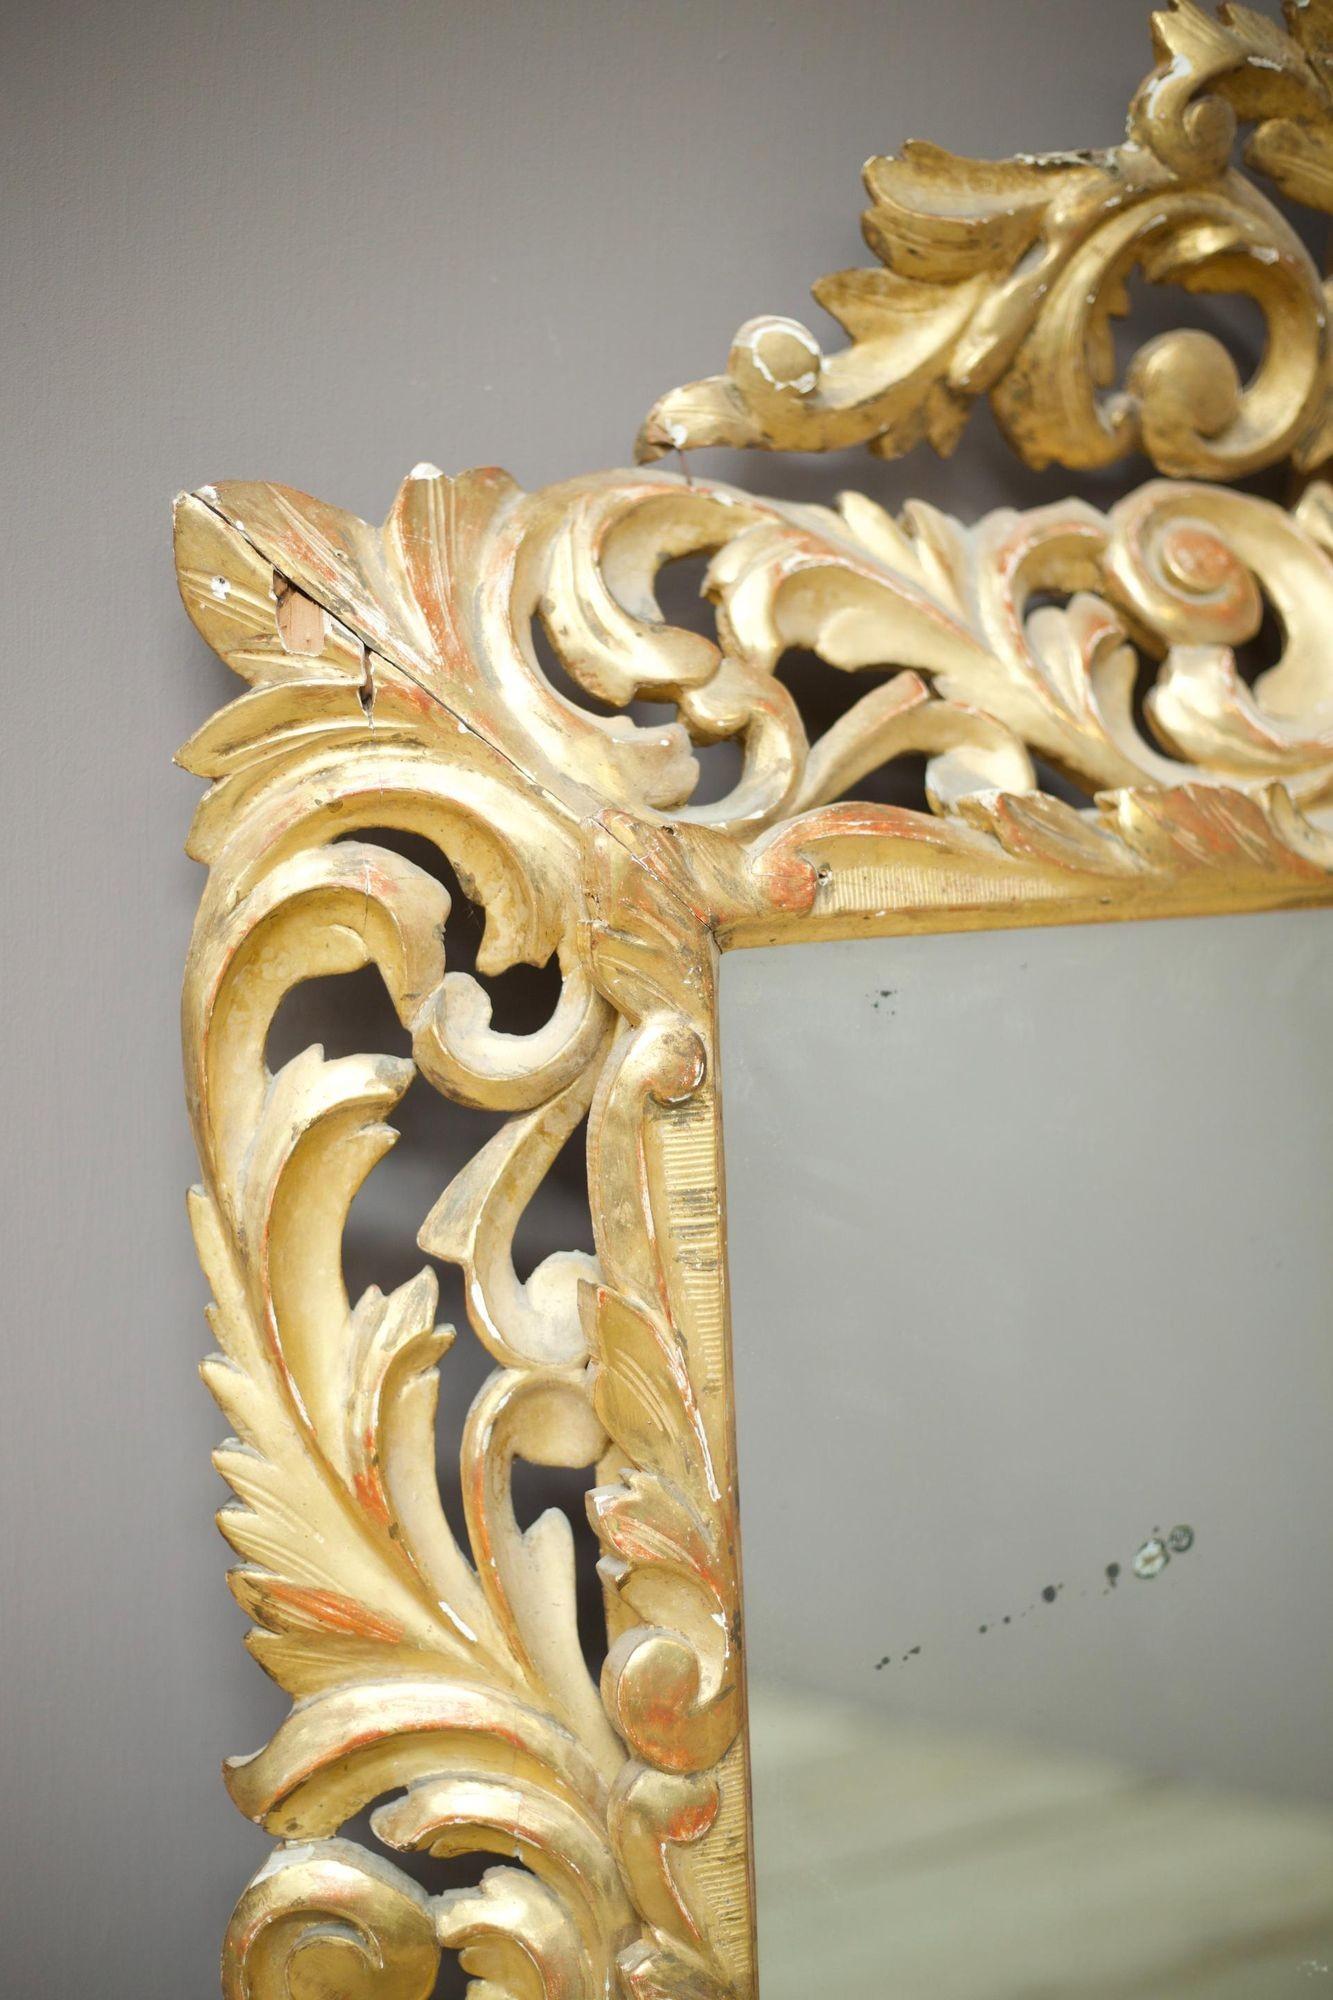 Dies ist ein außergewöhnlicher italienischer Giltwood-Spiegel aus dem frühen 19. Jahrhundert in sehr gutem Gesamtzustand in Anbetracht seiner fragilen Natur. Dieser Spiegel ist eine beeindruckende Größe und hat eine sehr saubere Spiegelplatte mit